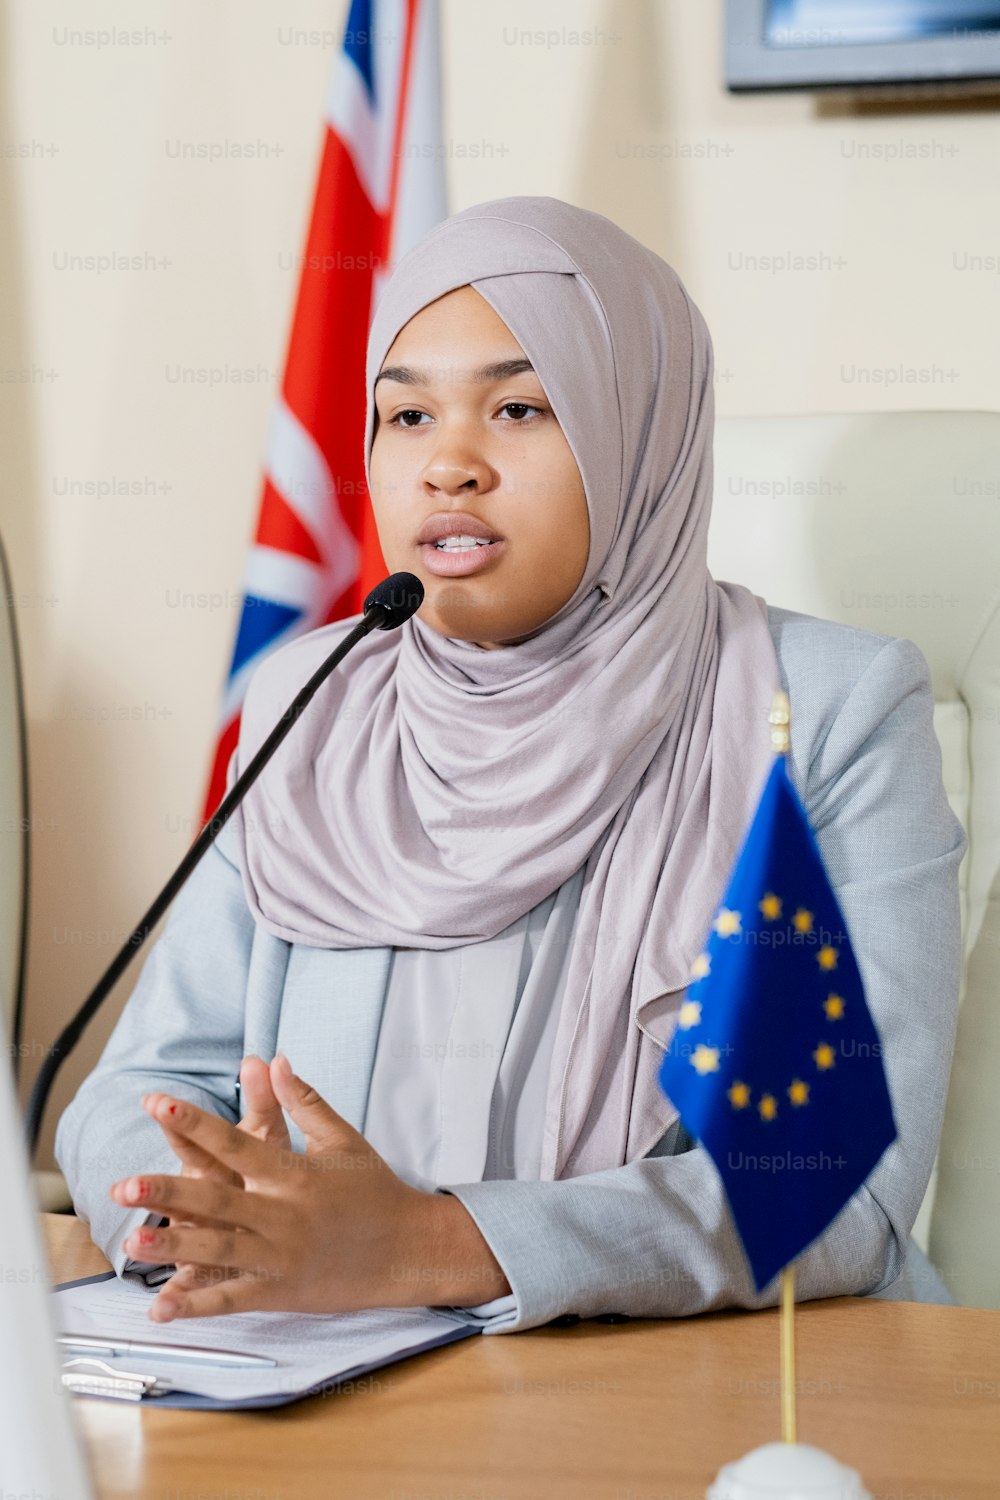 Confiante muçulmano representante da União Europeia em hijab tocando pontas dos dedos enquanto fala ao microfone no congresso